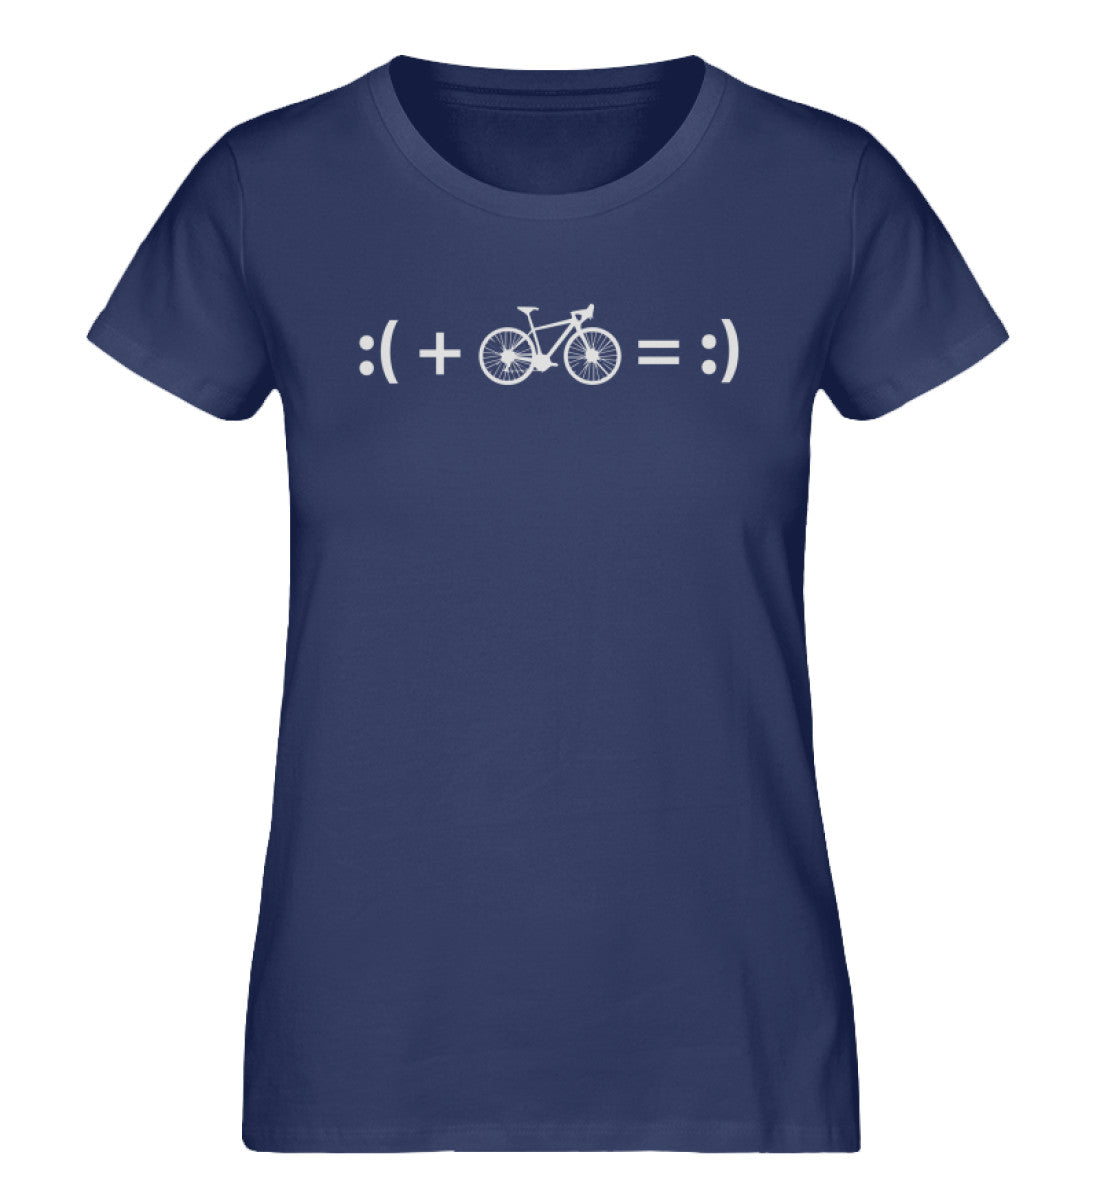 Radfahren macht glücklich - Damen Organic T-Shirt fahrrad Navyblau